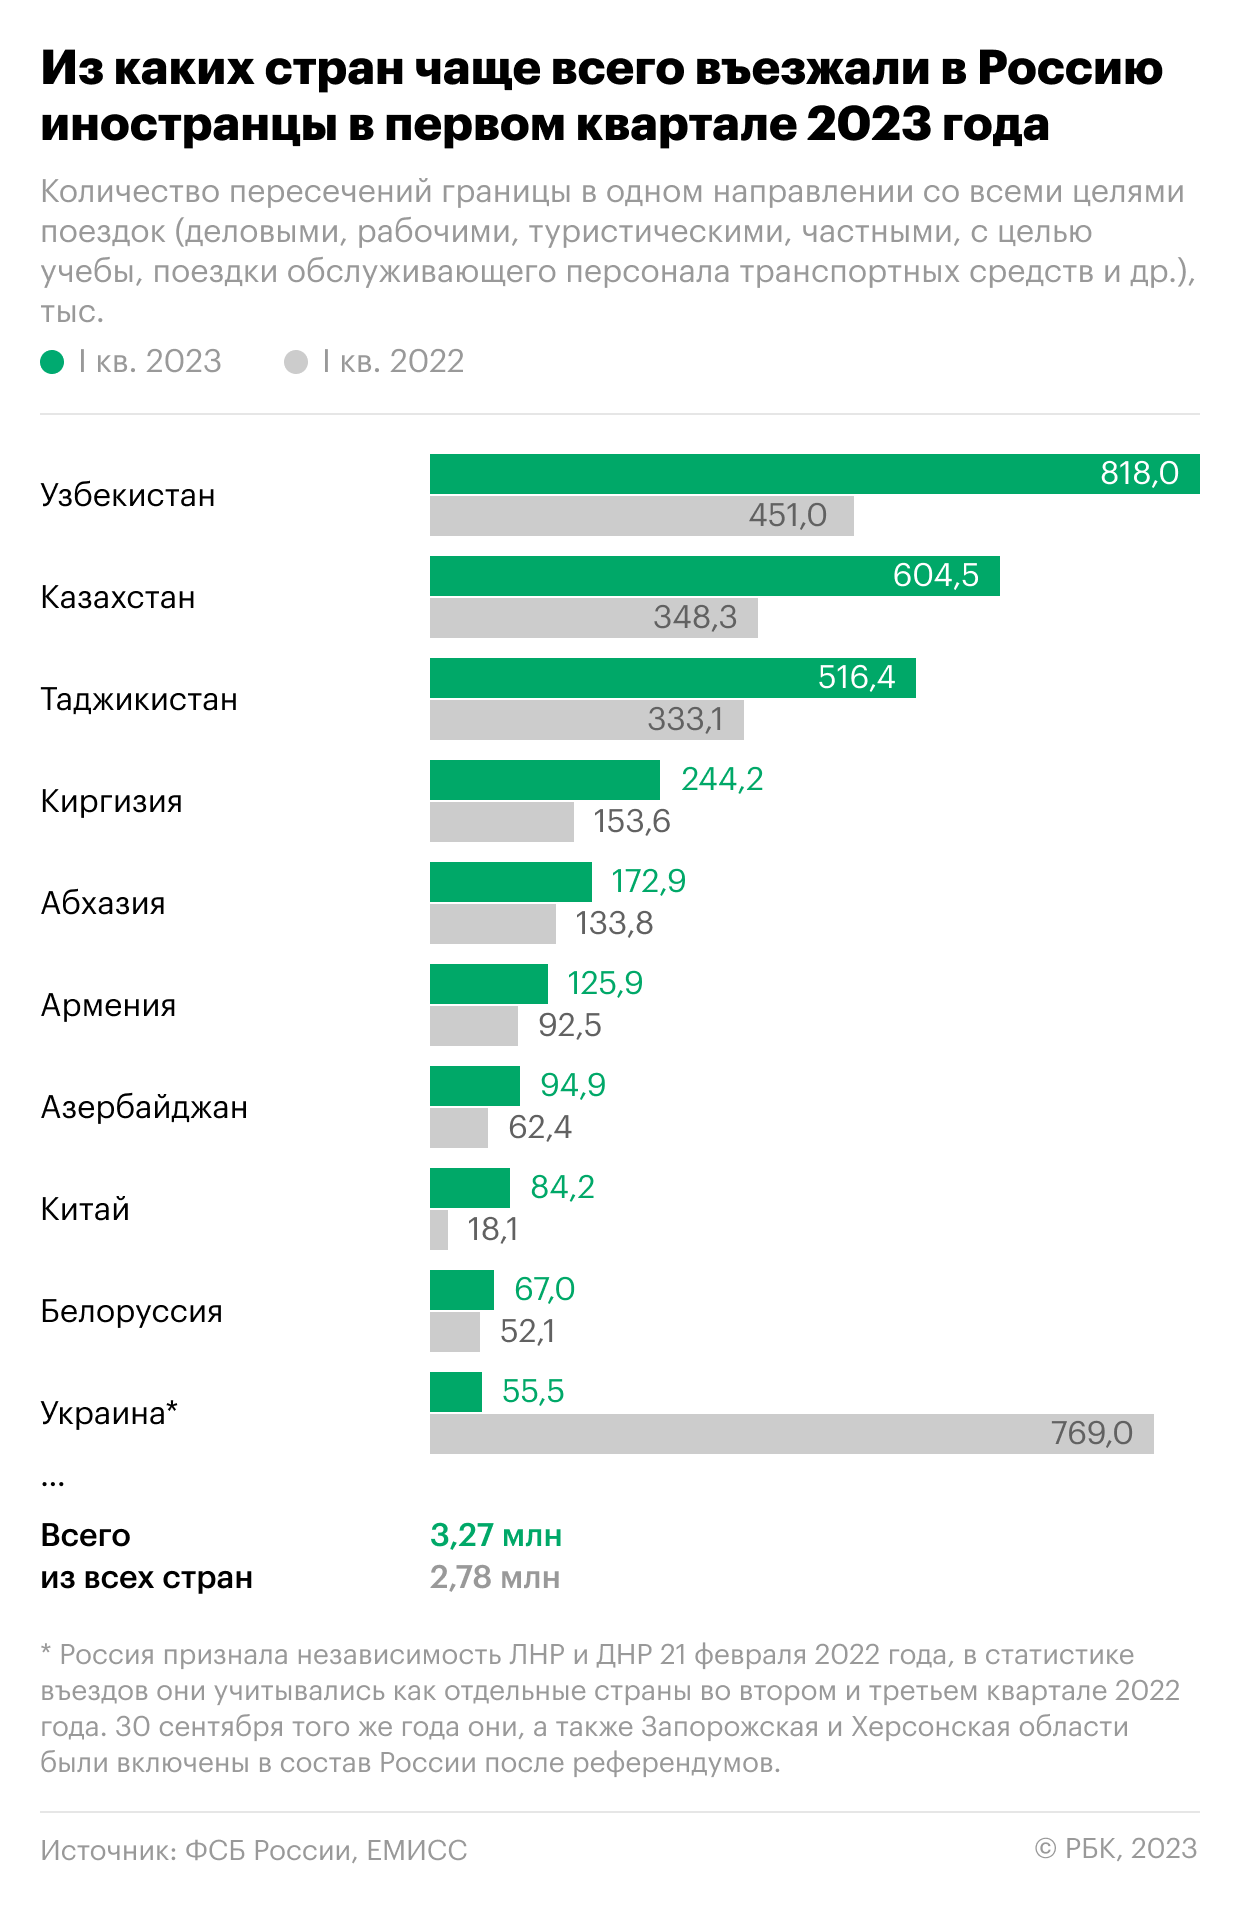 Количество въезжающих в россию. Число мигрантов в России в 2023. Количество мигрантов в России в 2023 году. Иностранцы в России 2023. Количество мигрантов в России по годам 2023.